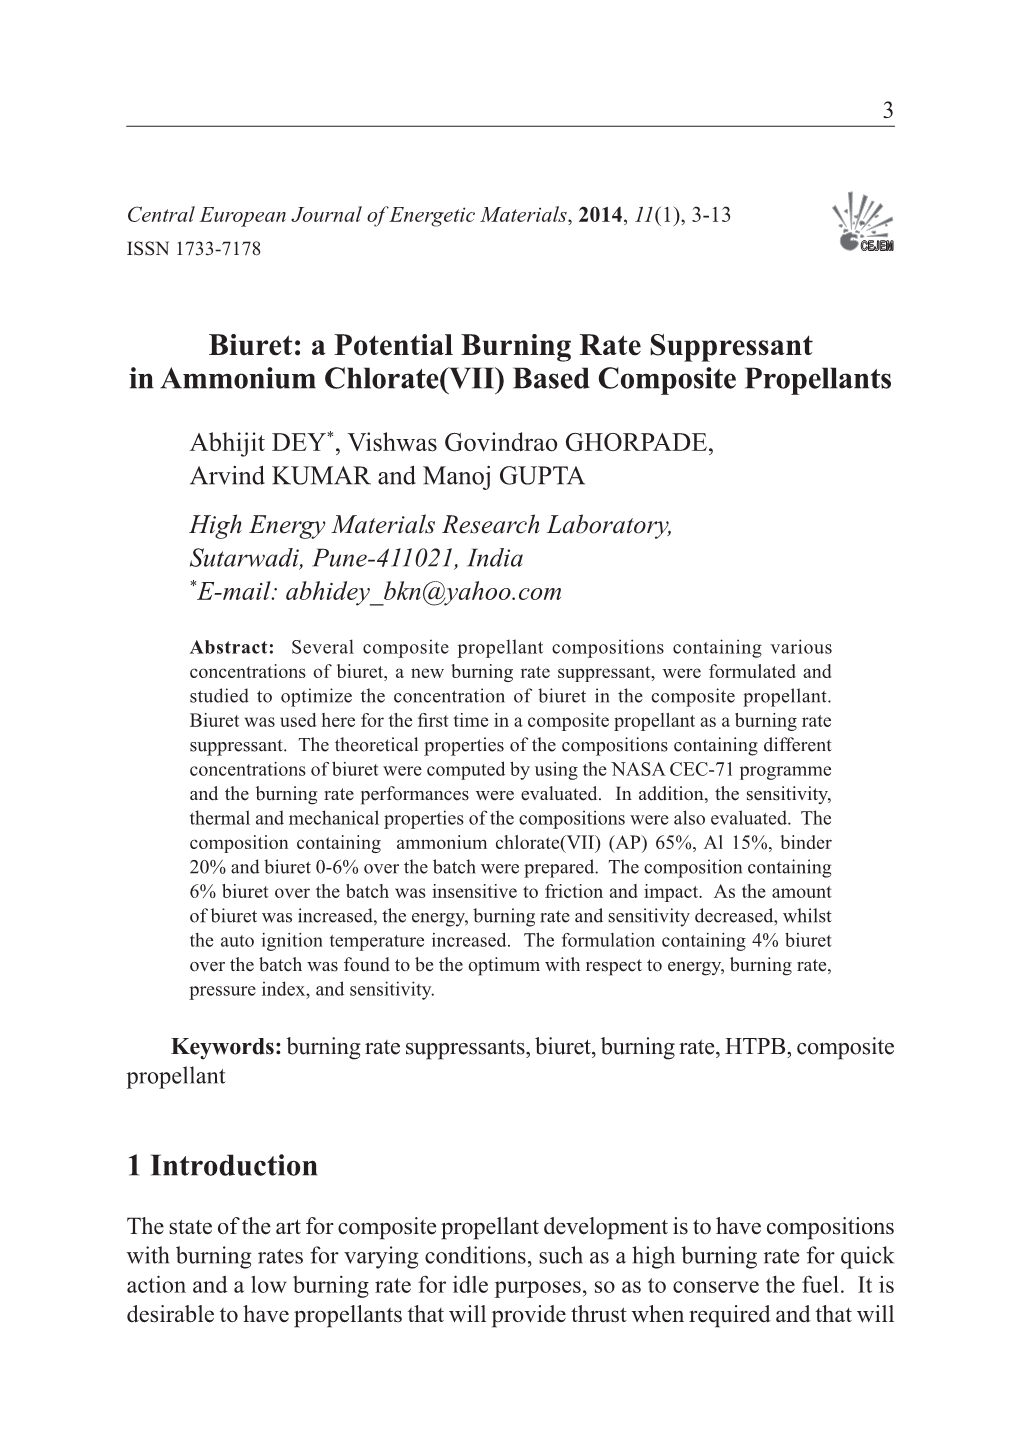 Biuret: a Potential Burning Rate Suppressant in Ammonium Chlorate(VII)